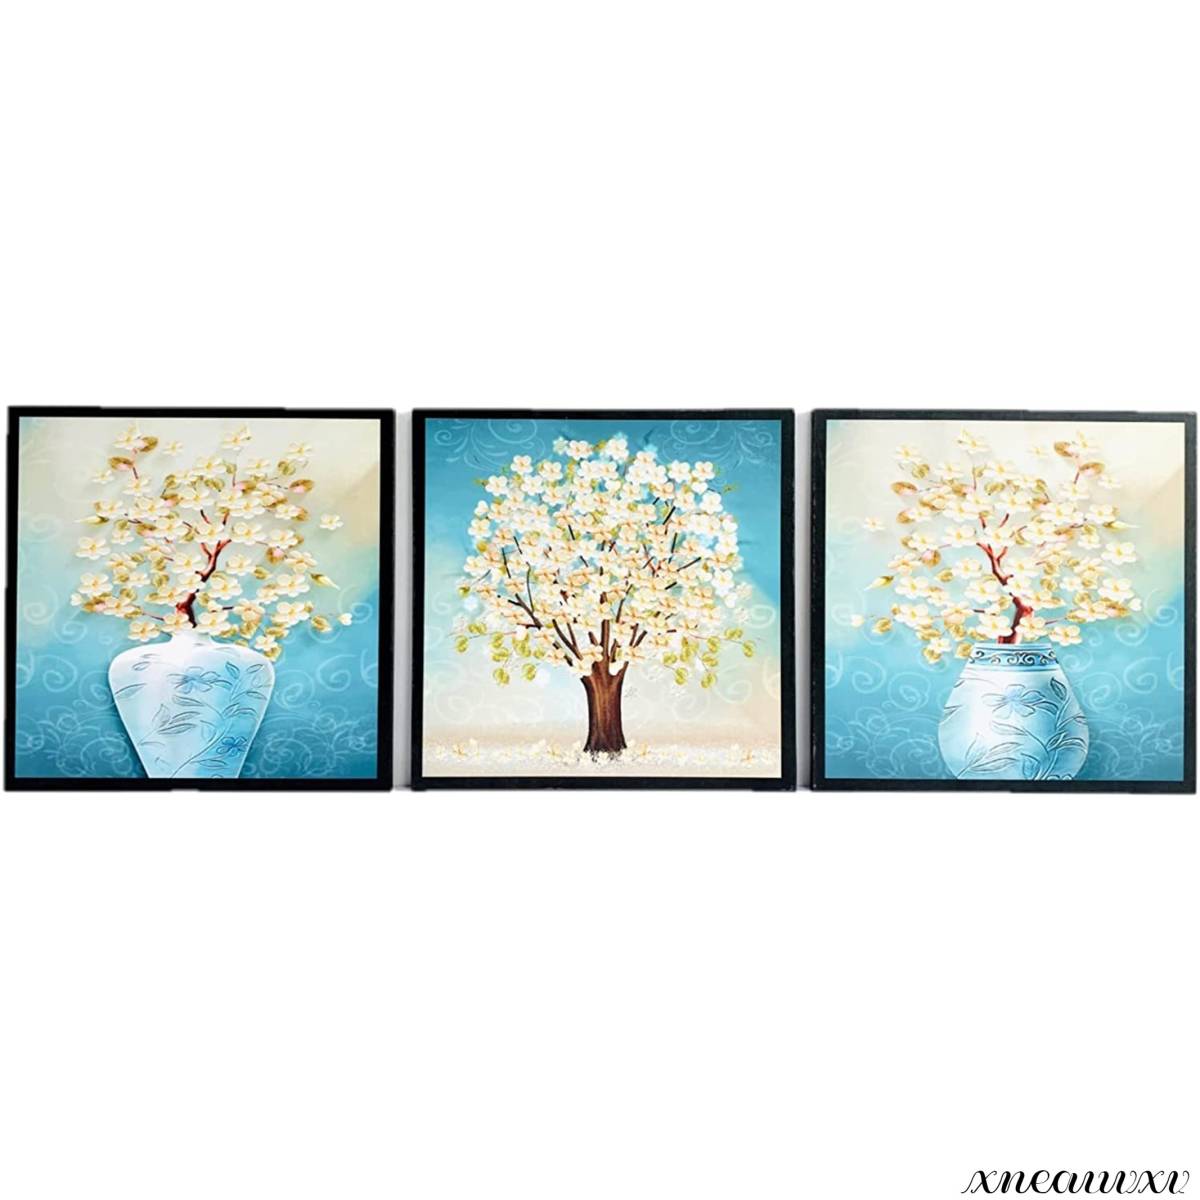 綺麗な 3枚アートパネル 白い花 インテリア 壁掛け 部屋飾り 自然 フラワー キャンバス 絵画 おしゃれ ウォール アート 芸術 模様替え